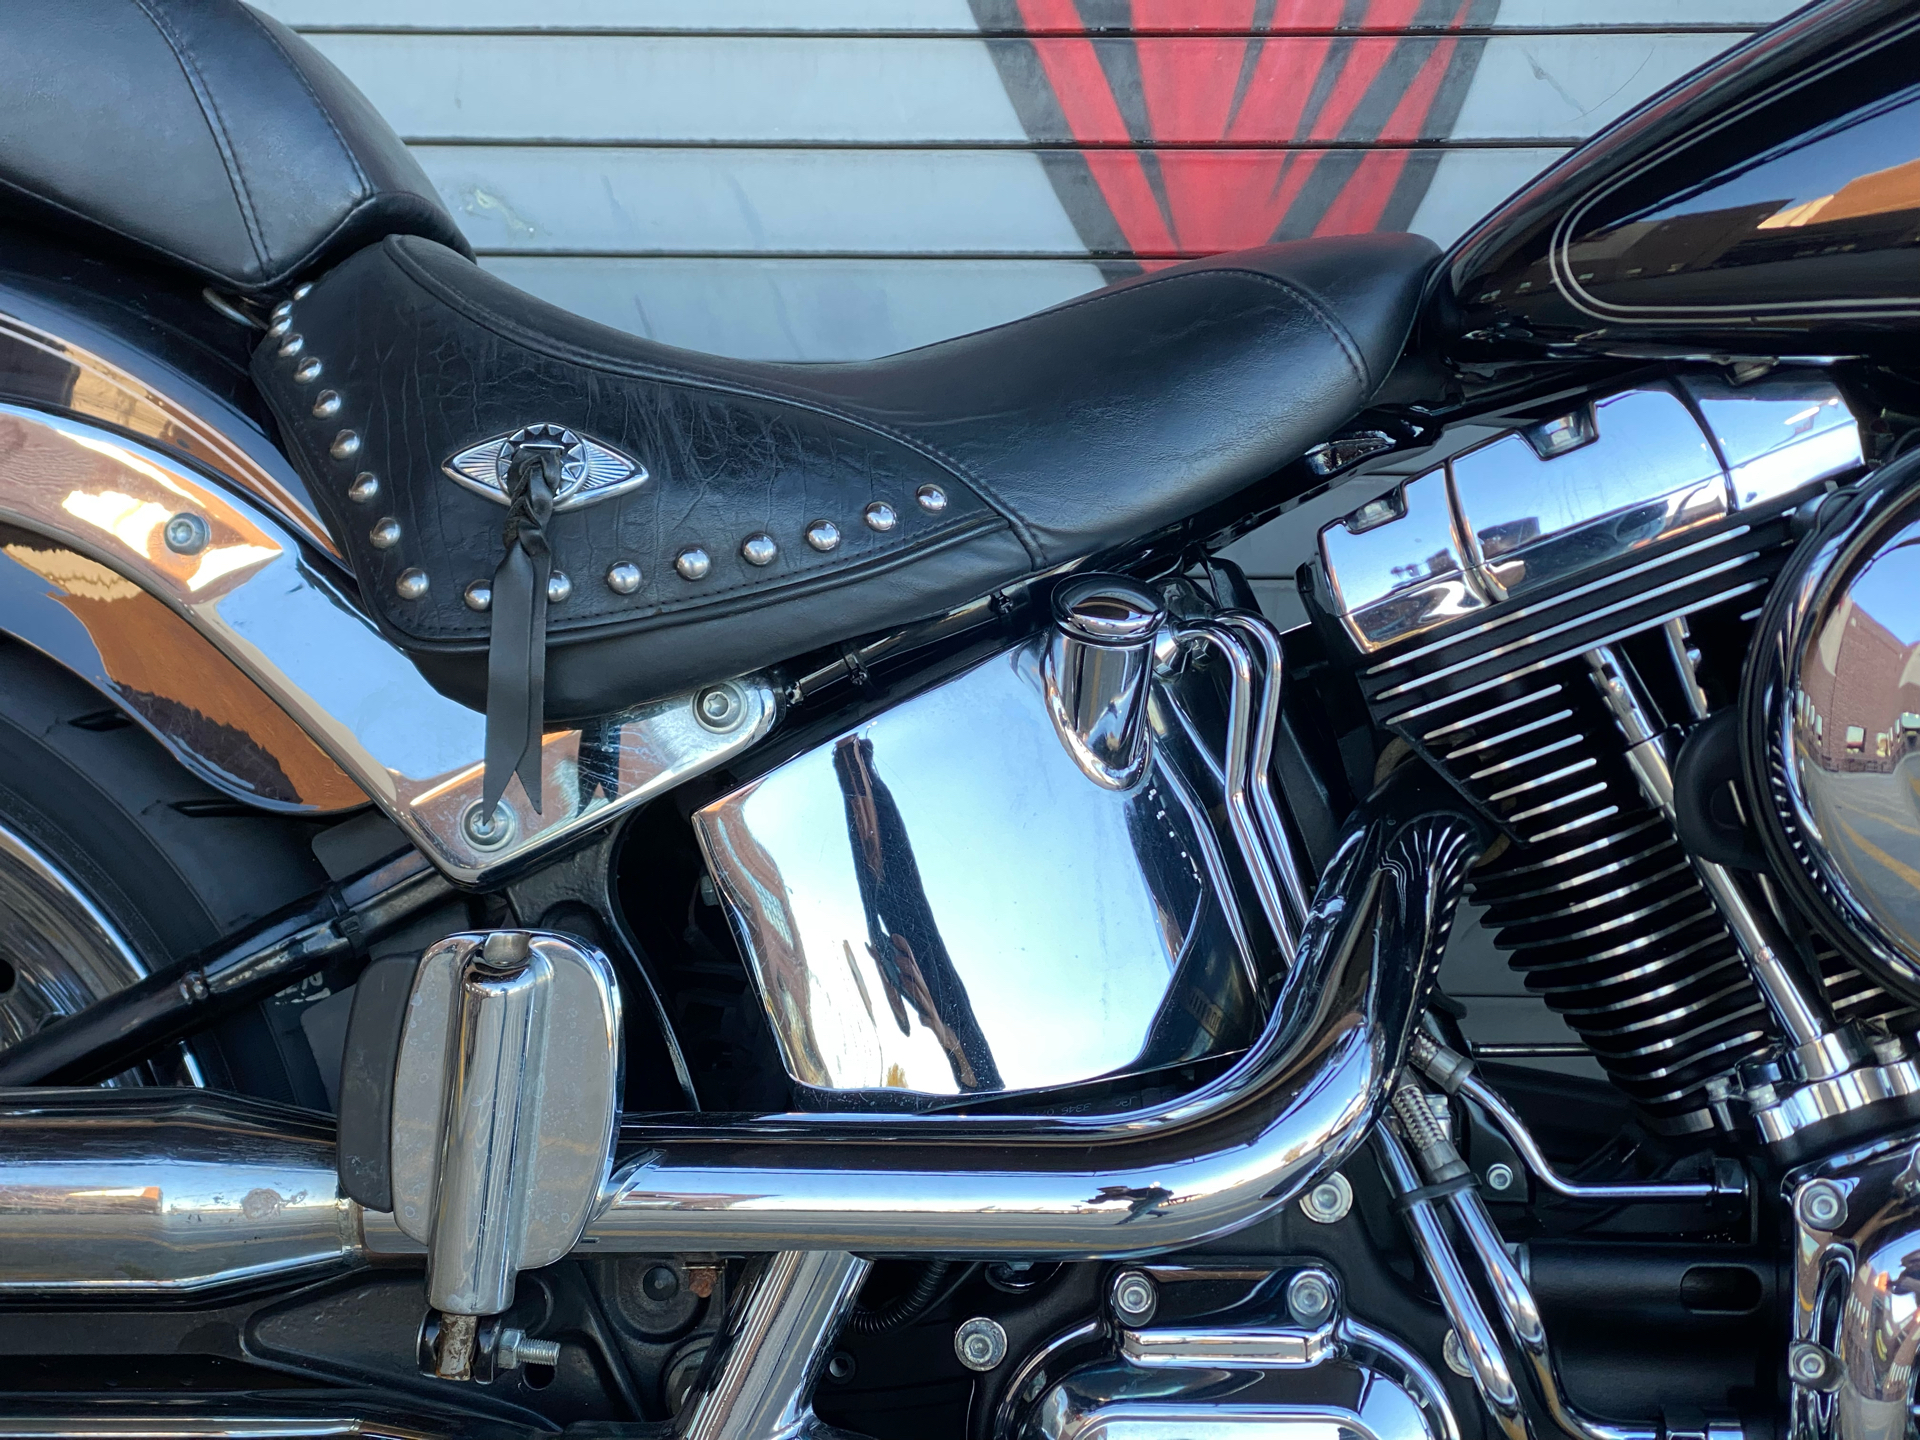 2017 Harley-Davidson Fat Boy® in Carrollton, Texas - Photo 7